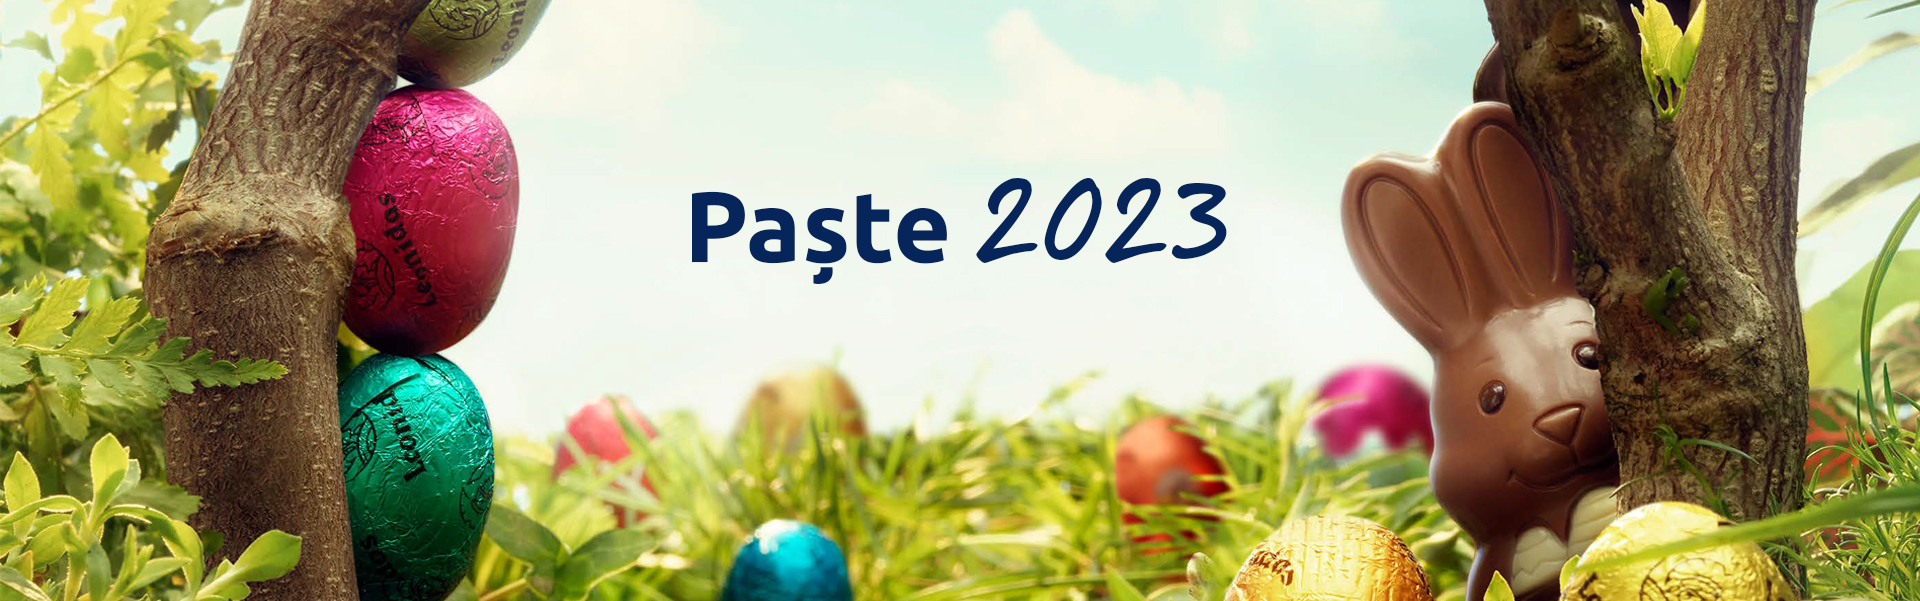 Paste2023